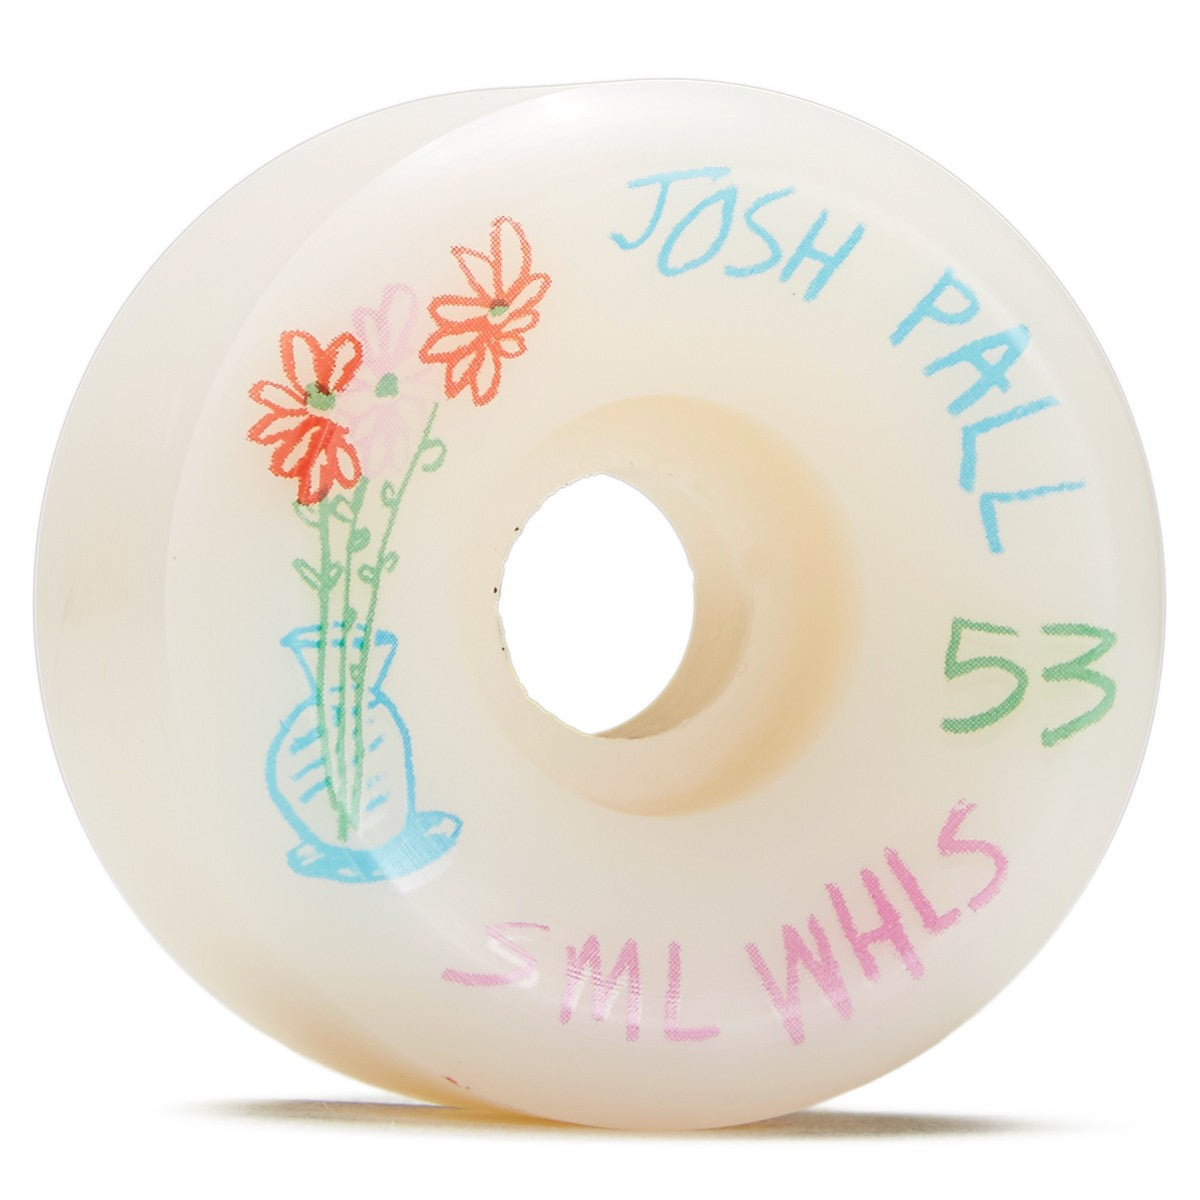 ที่ดันดินสอ SML - Josh Pall Wheels 53mm/99a 